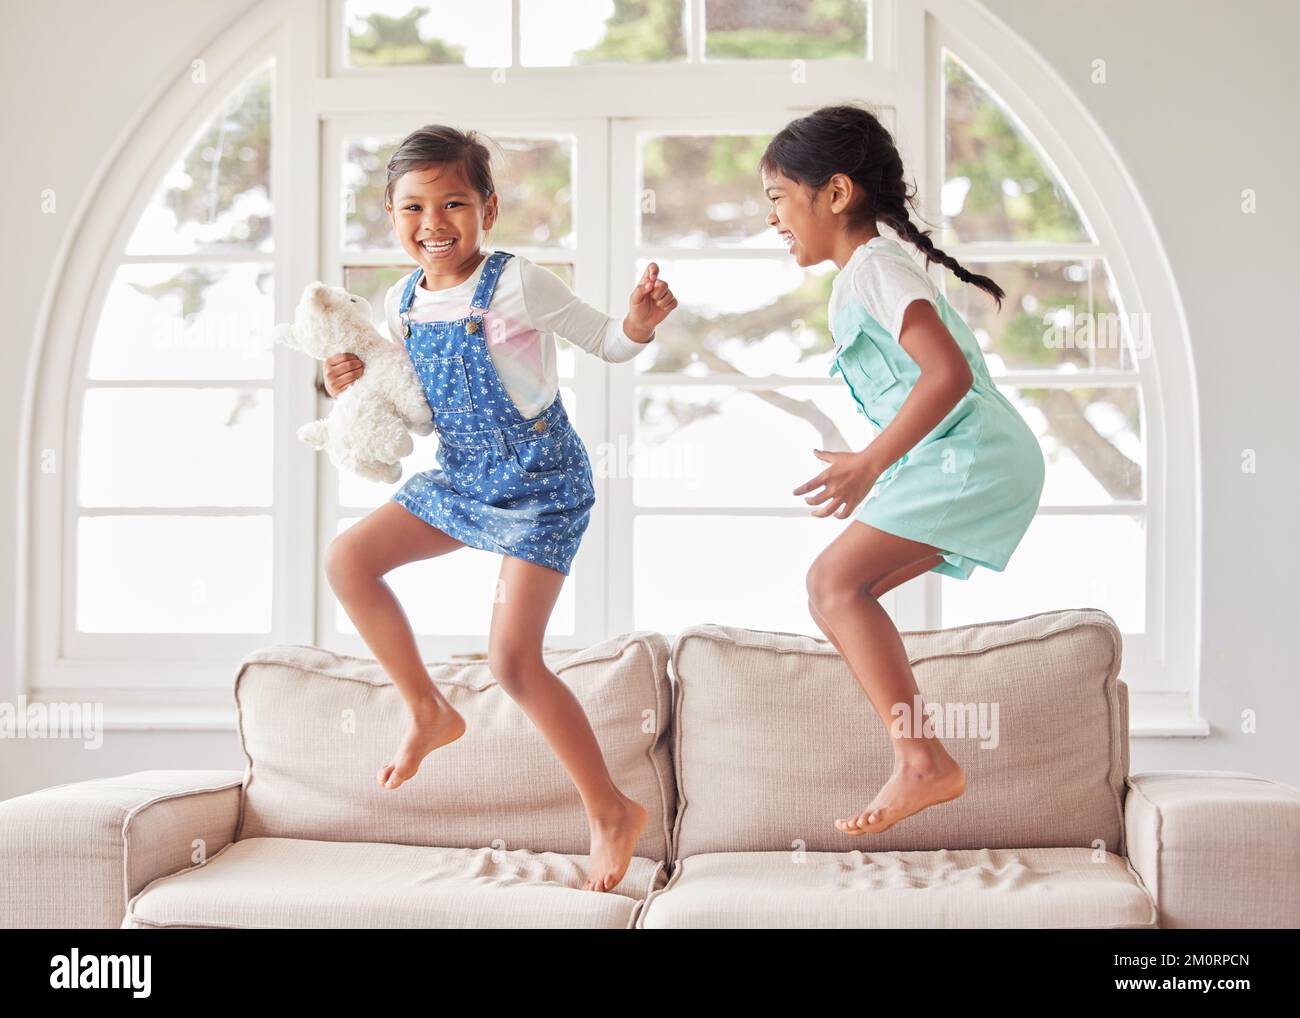 Due ragazze che saltano insieme sul divano. Due sorelle che si divertono e si guardano felici mentre ballano e suonano insieme a casa Foto Stock